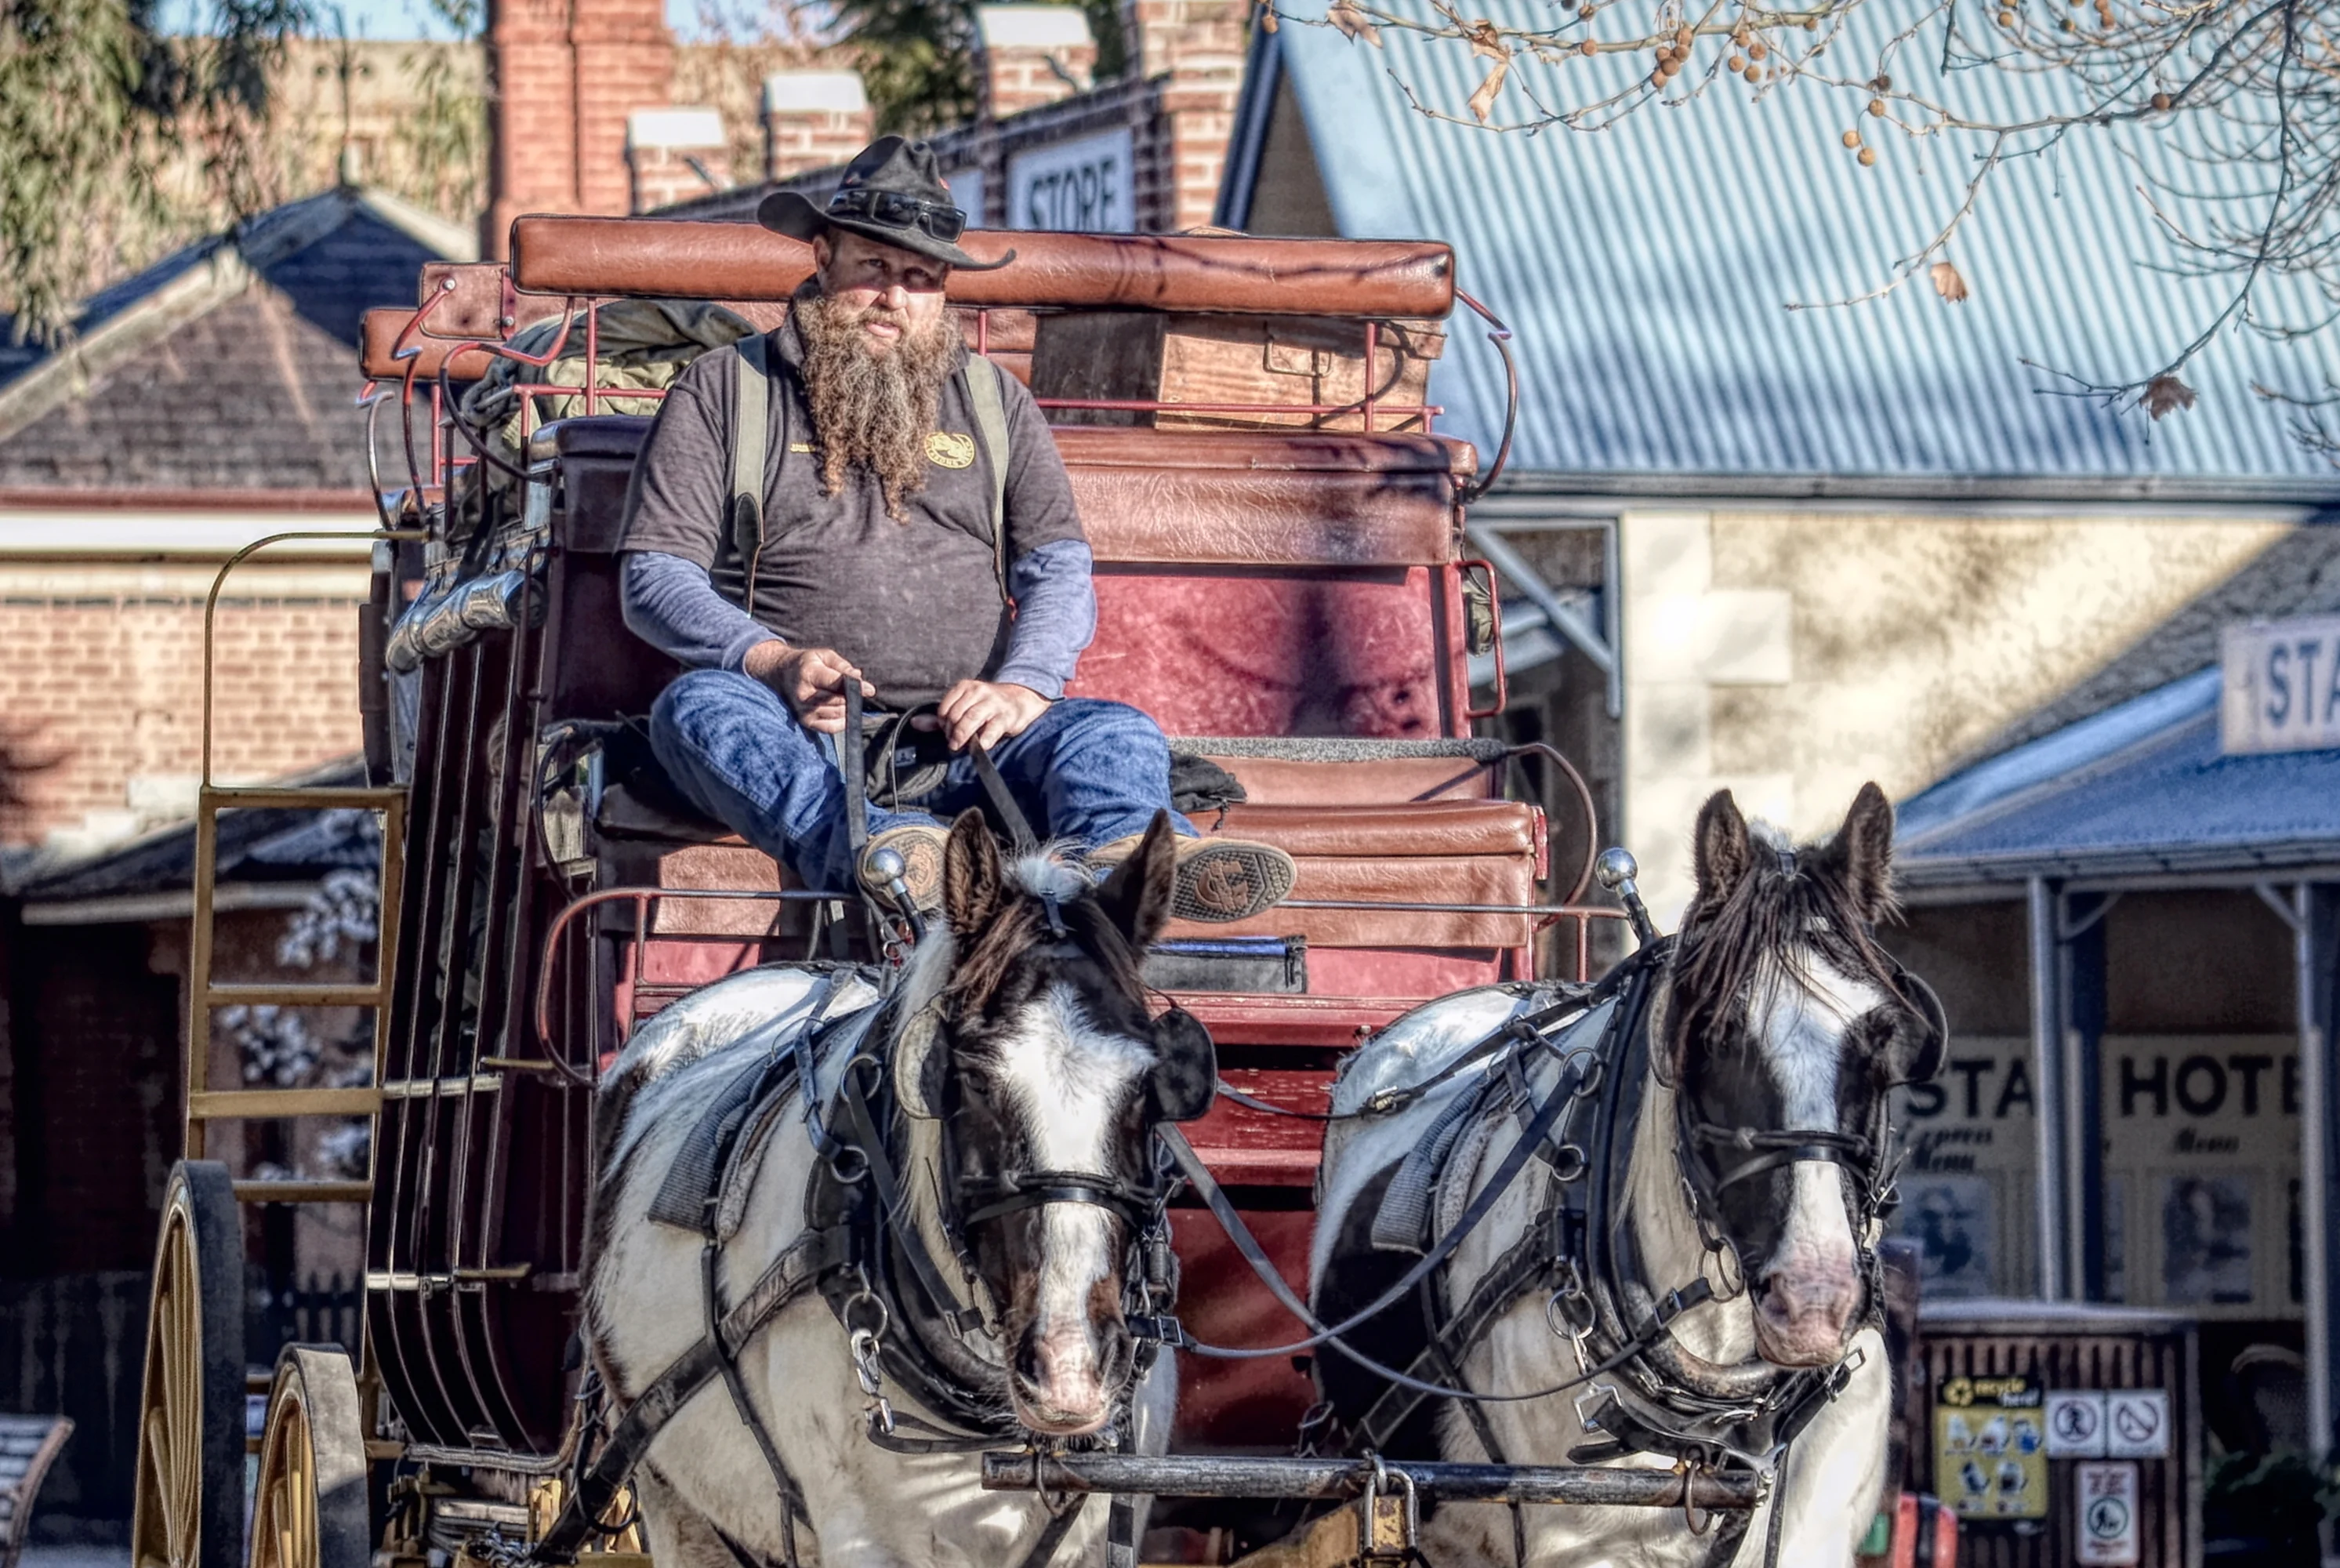 Horse coach ride along Murray Esplanade